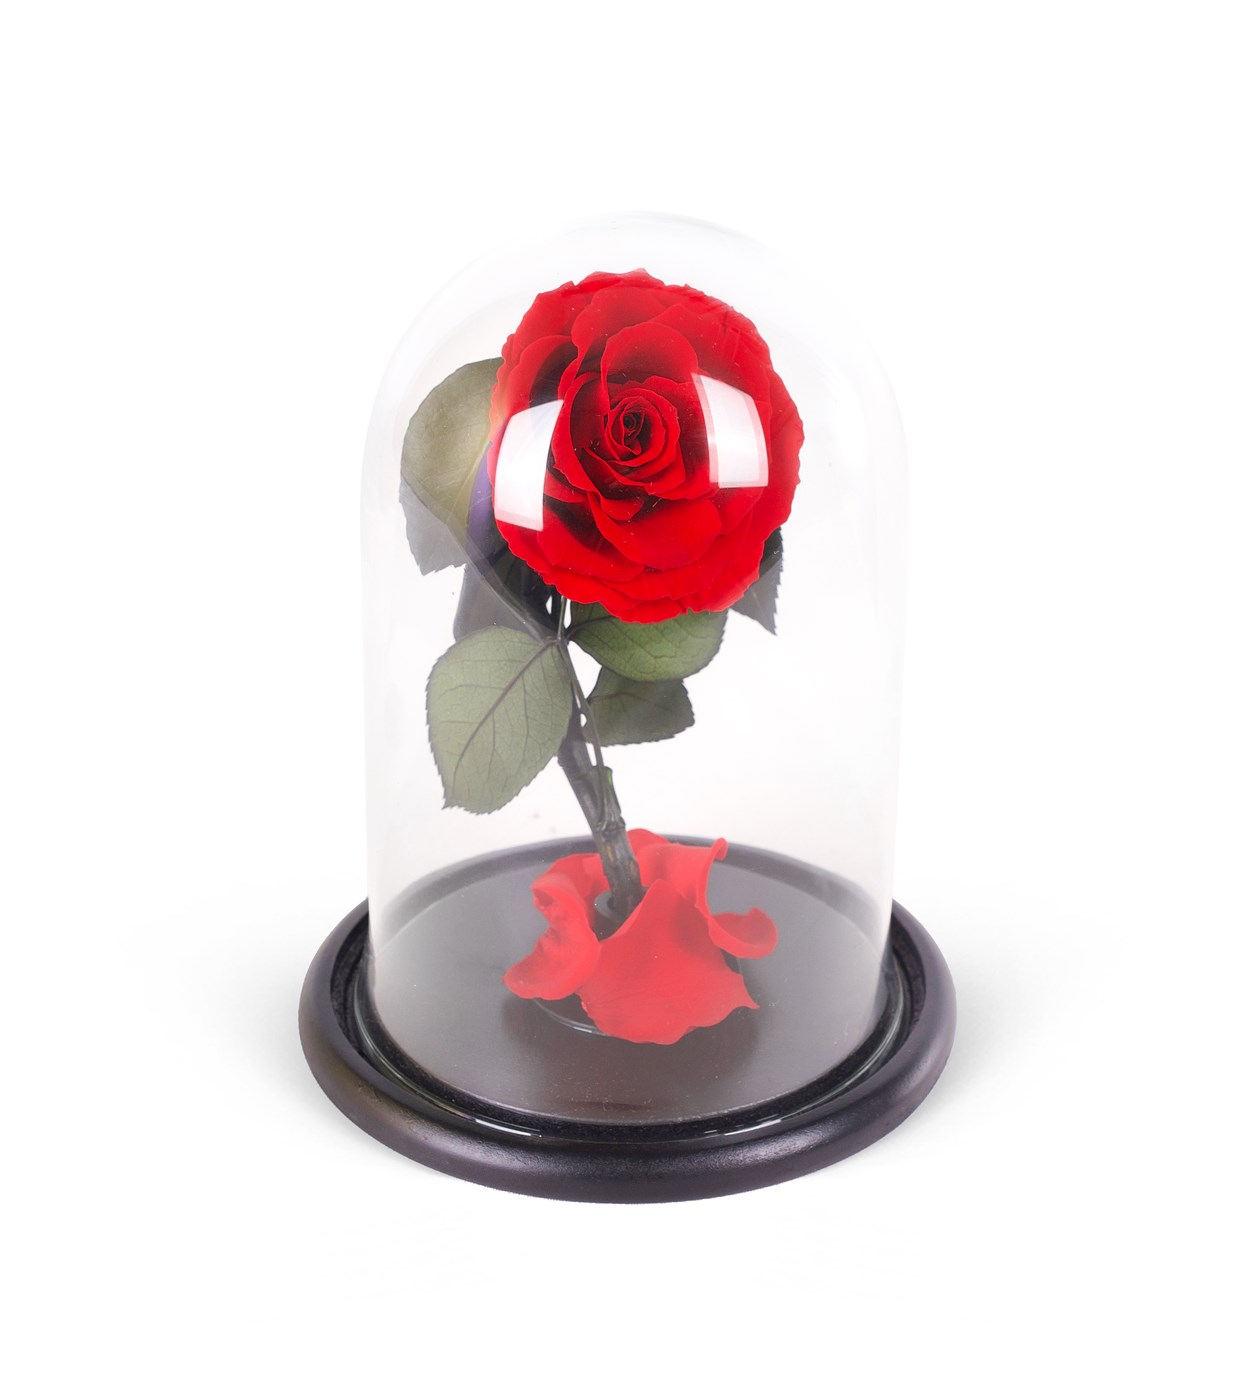 Solmayan Gül - Infinity Rose Positano 